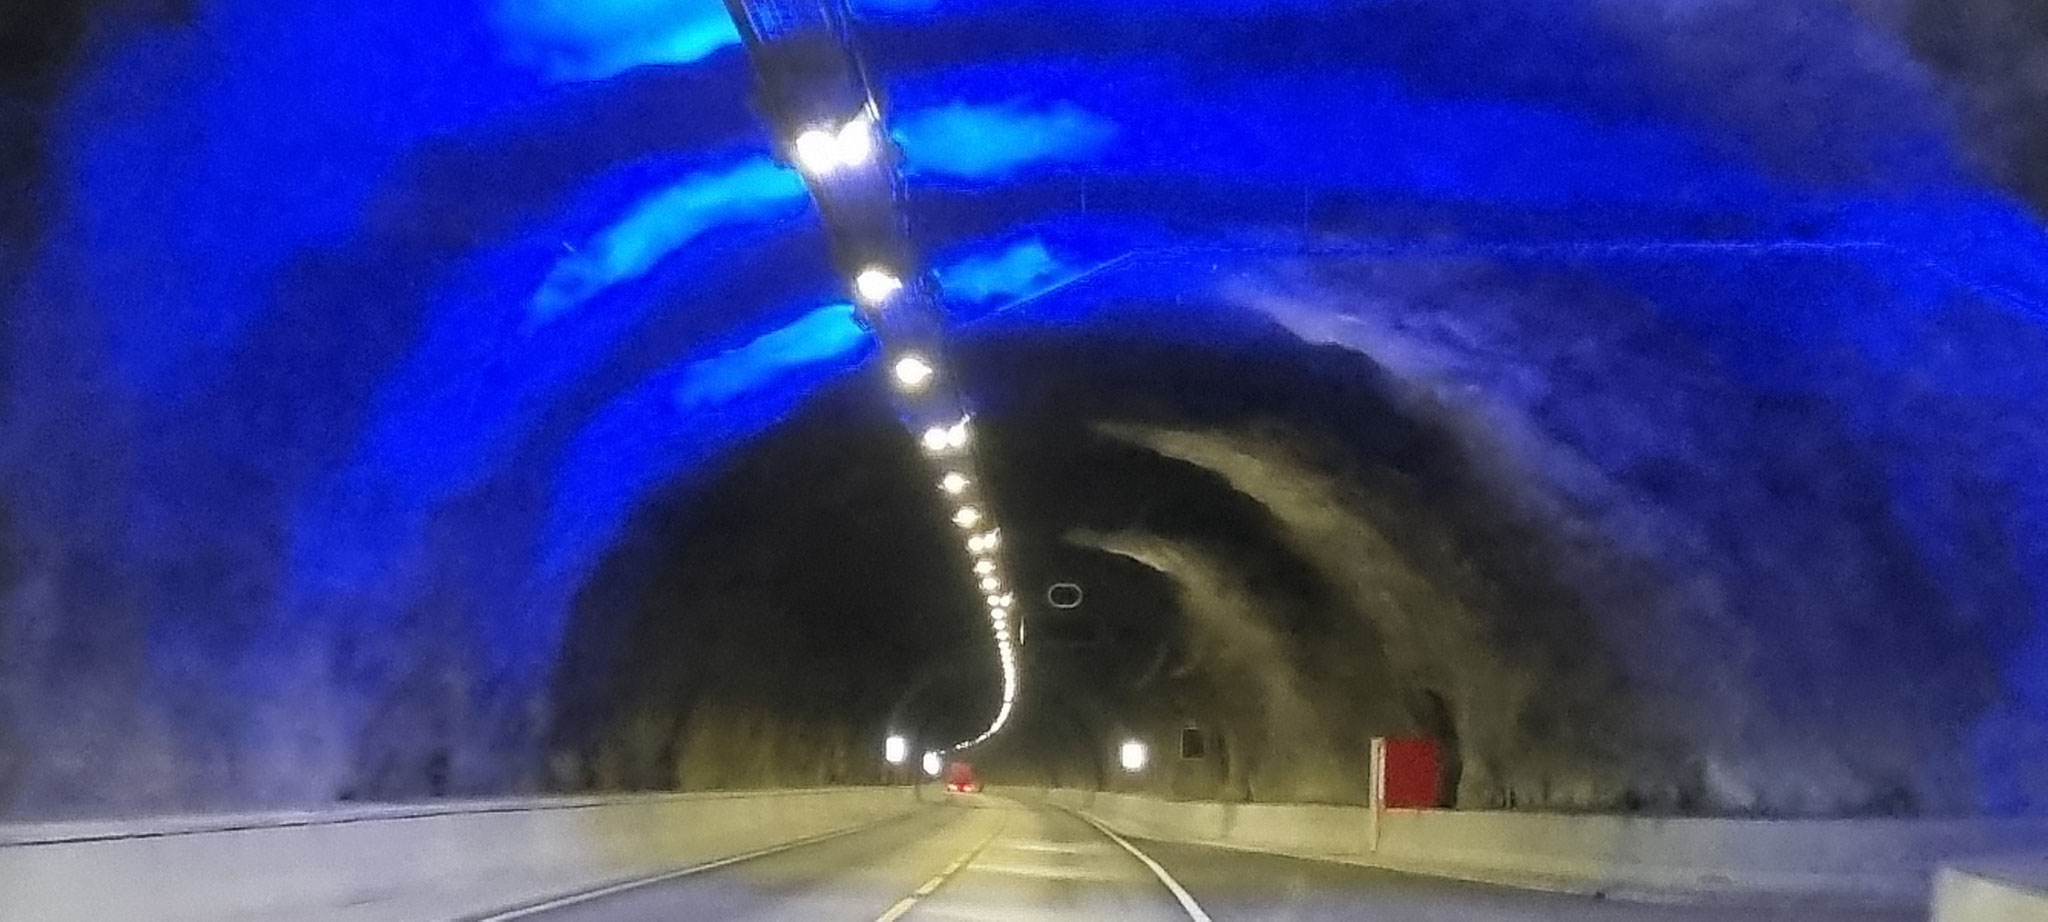 Erinnert uns an den Lærdaltunnel